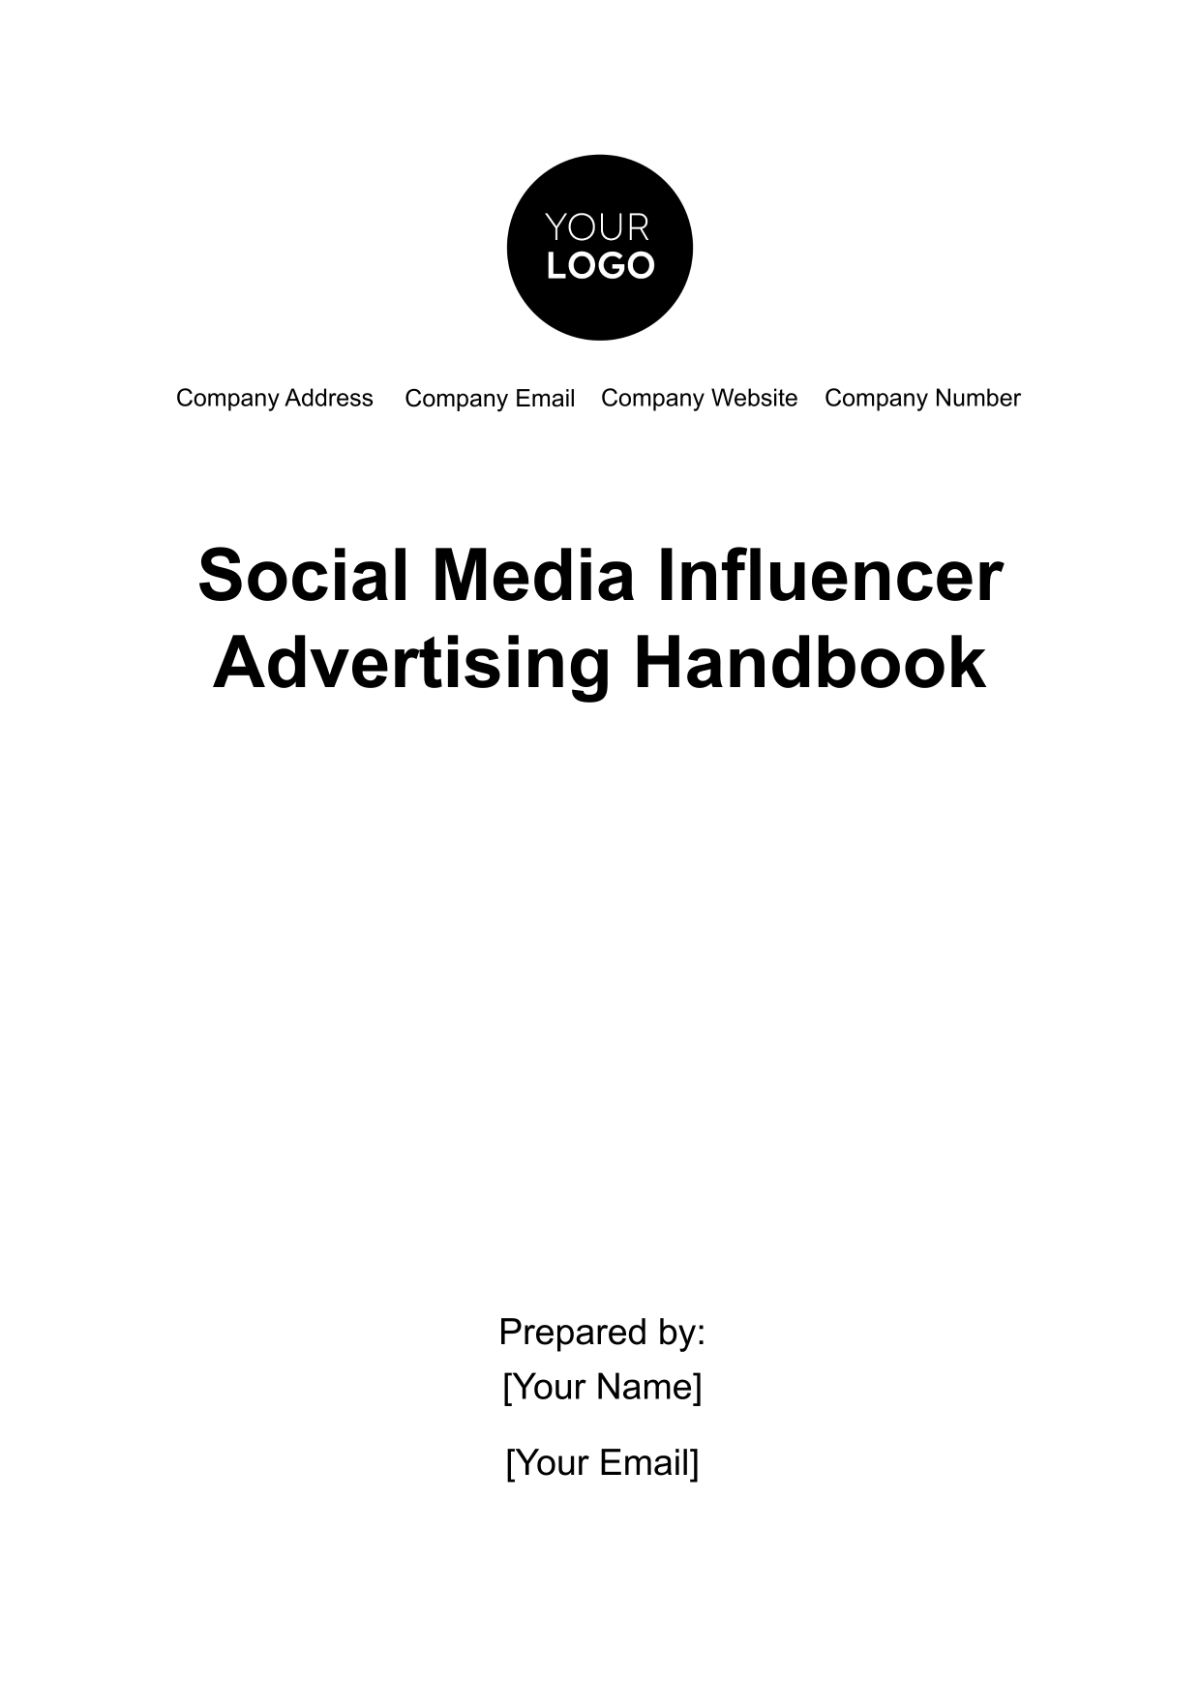 Free Social Media Influencer Advertising Handbook Template